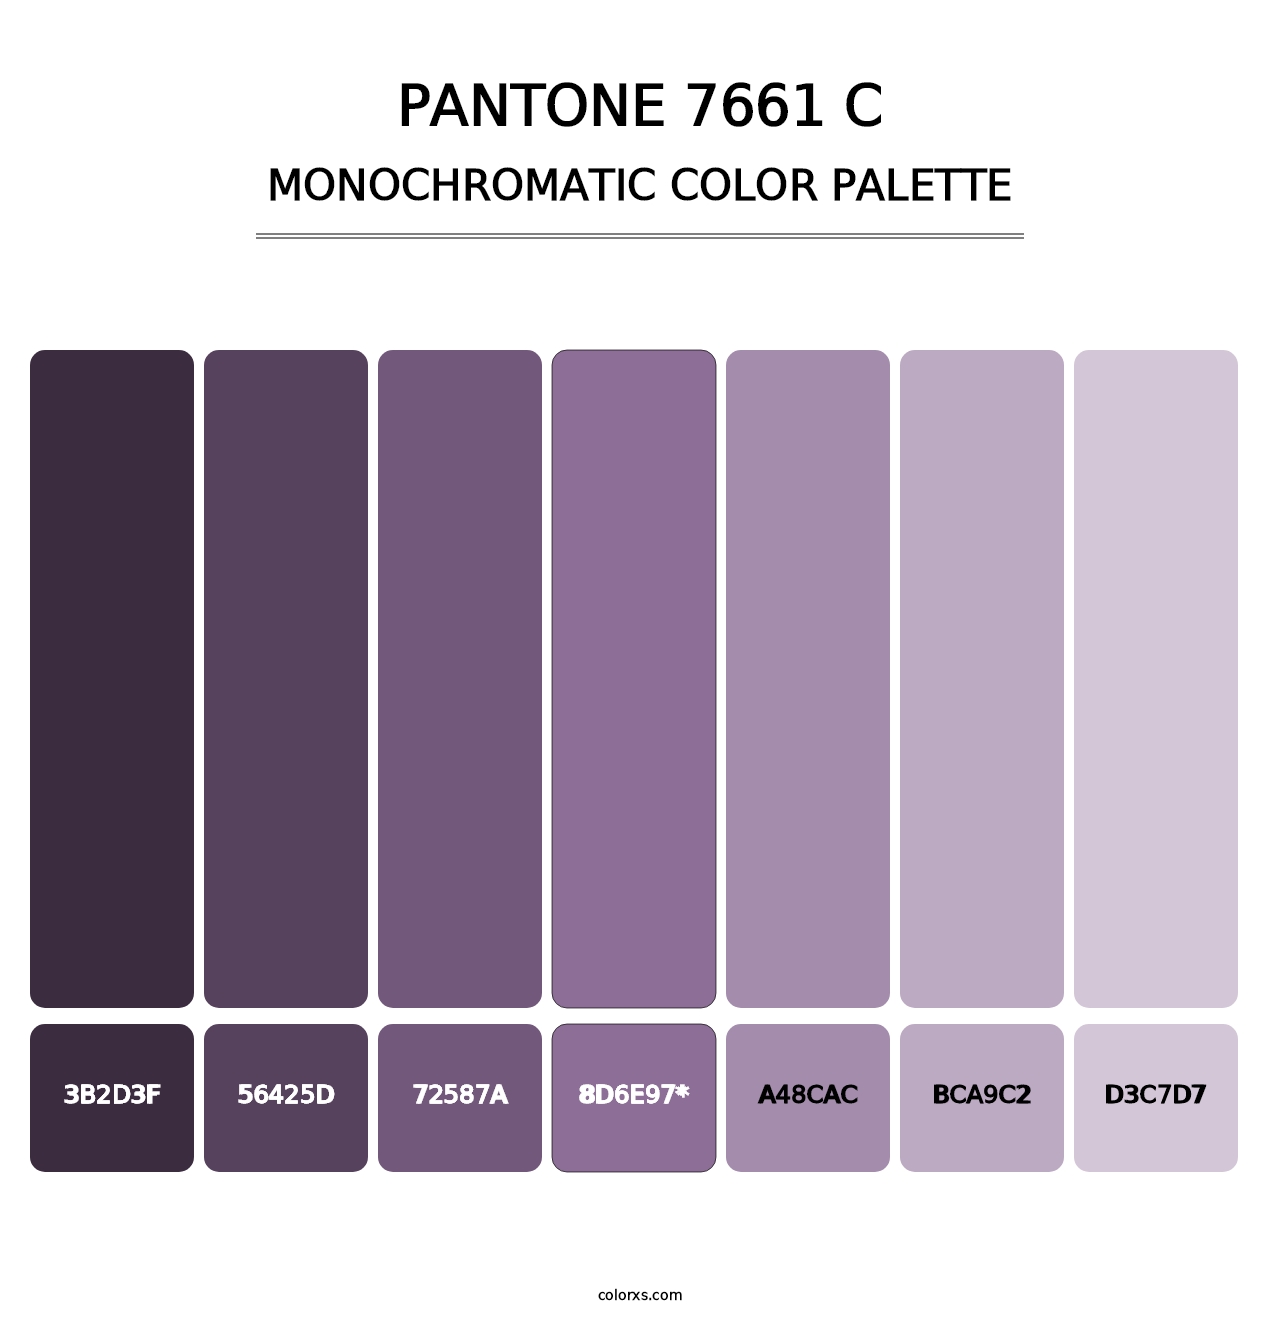 PANTONE 7661 C - Monochromatic Color Palette